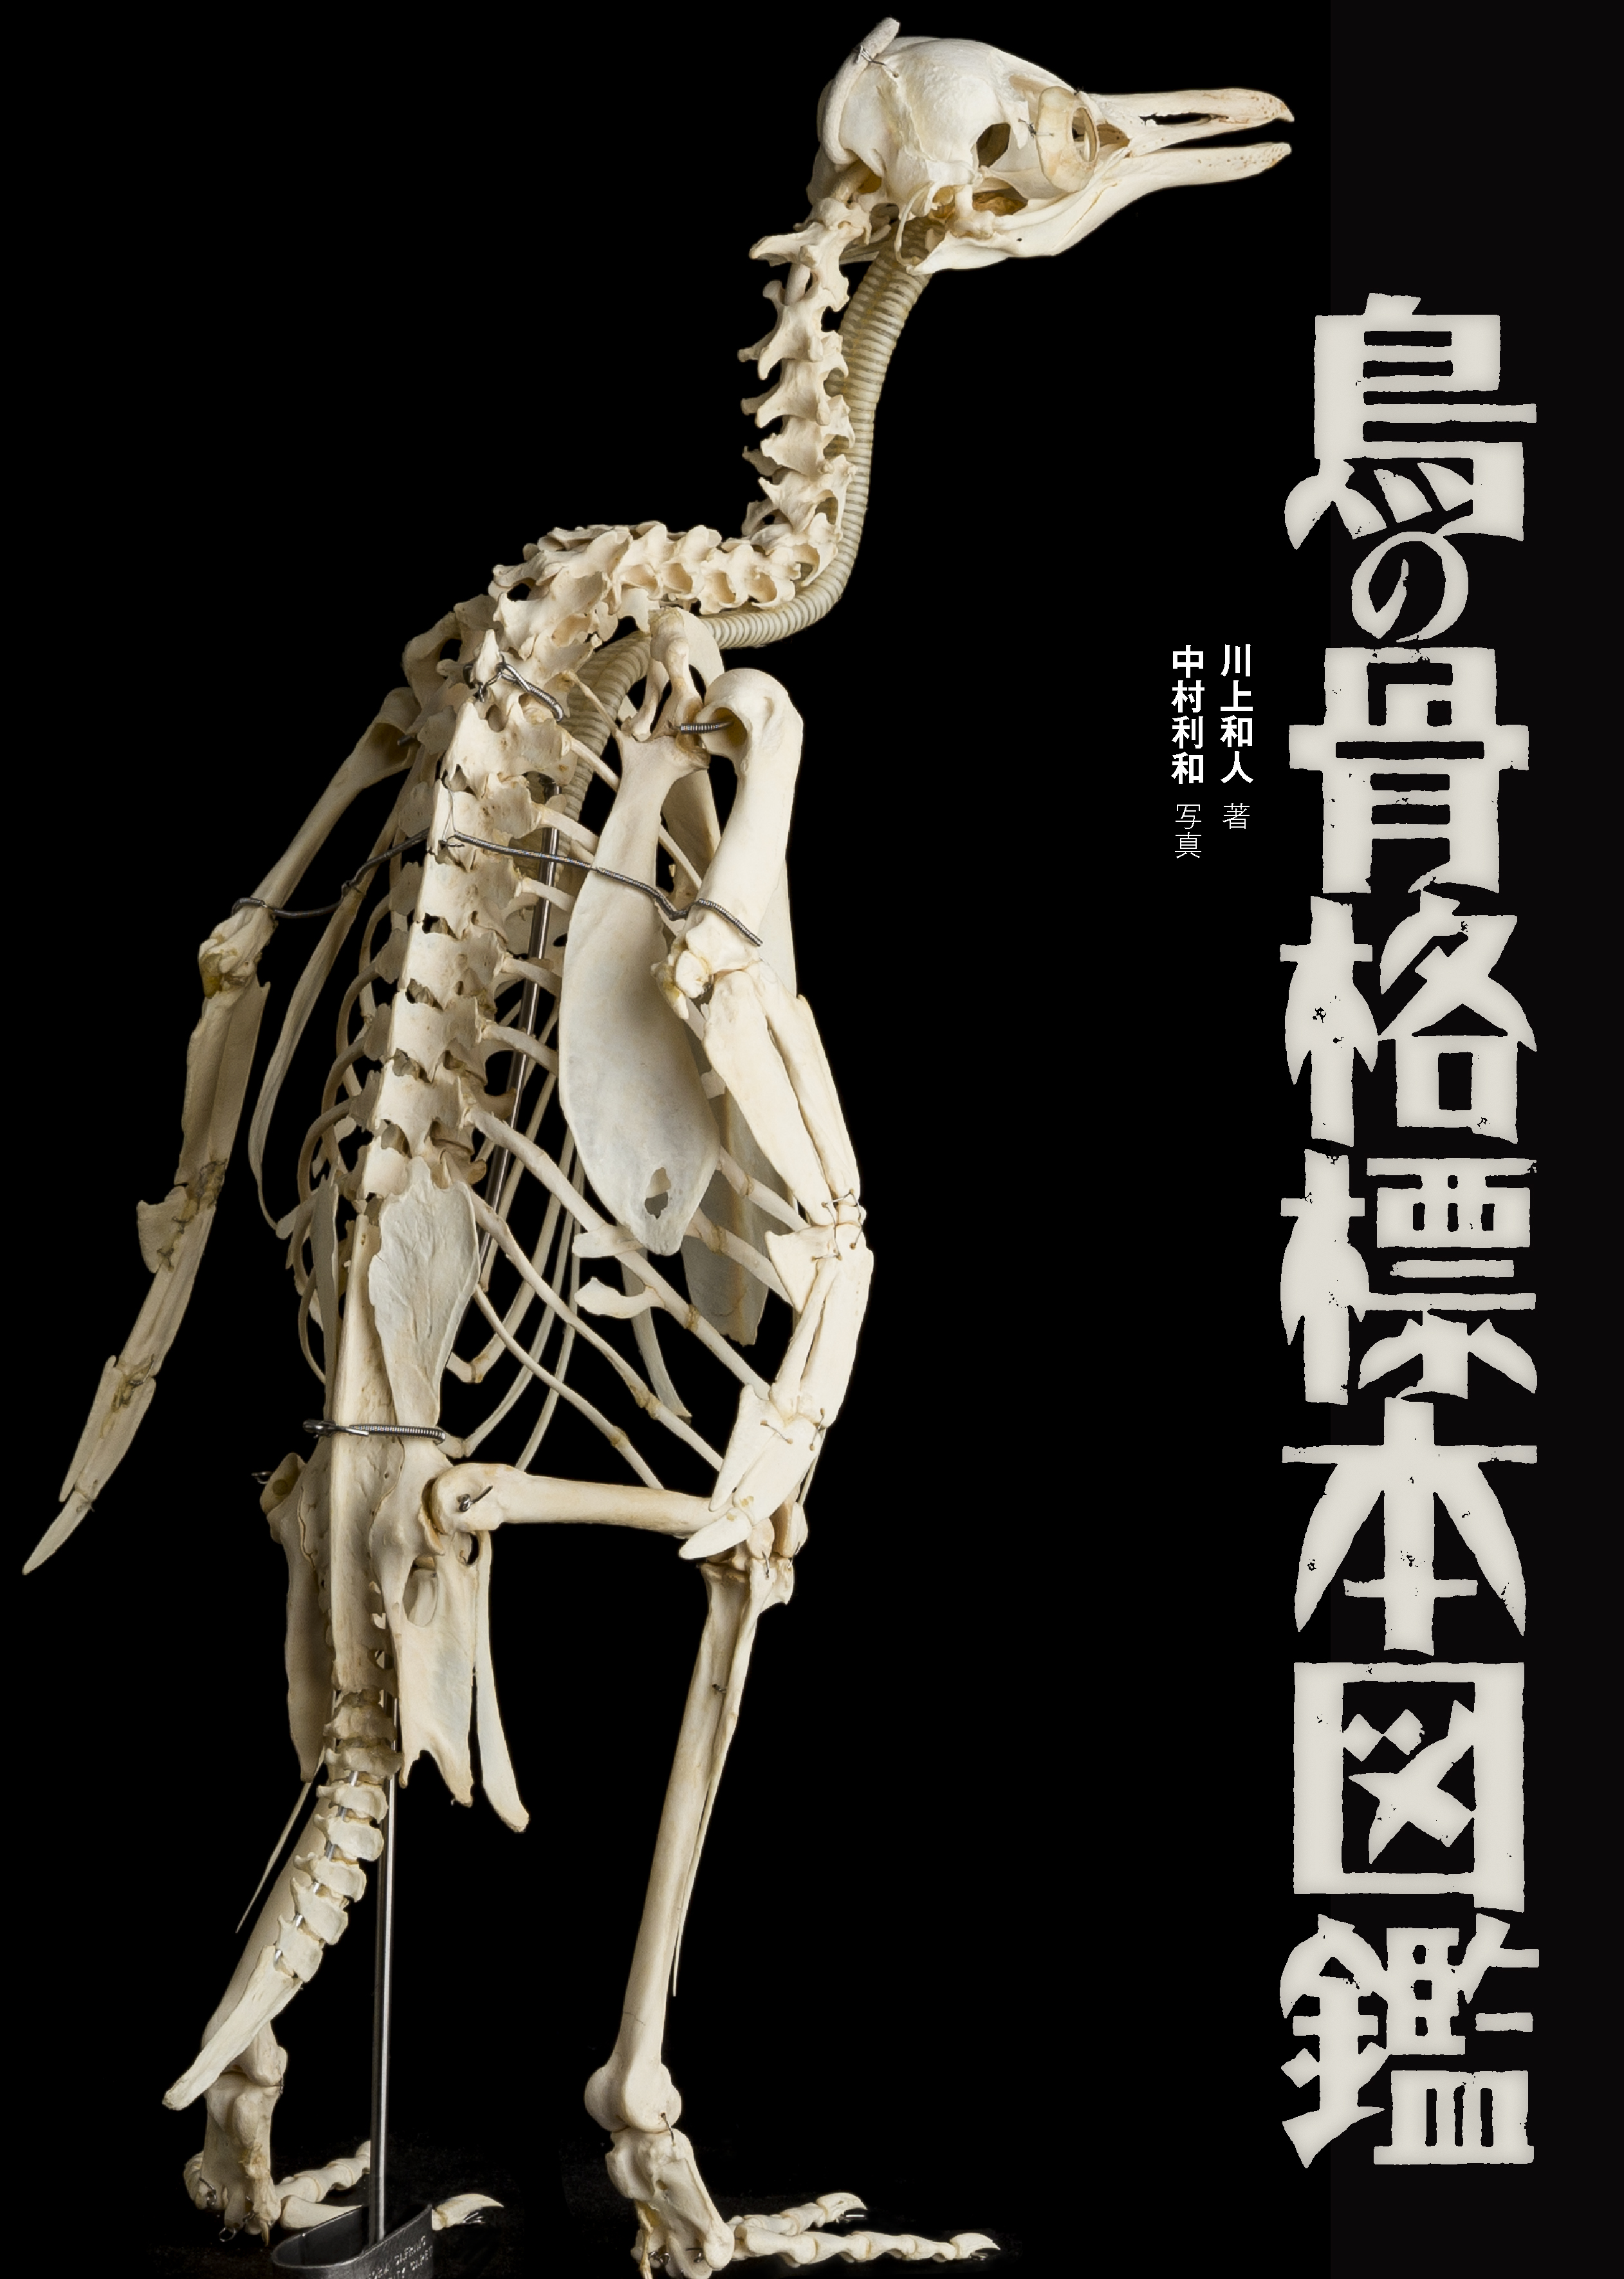 鳥の骨格標本図鑑の商品画像